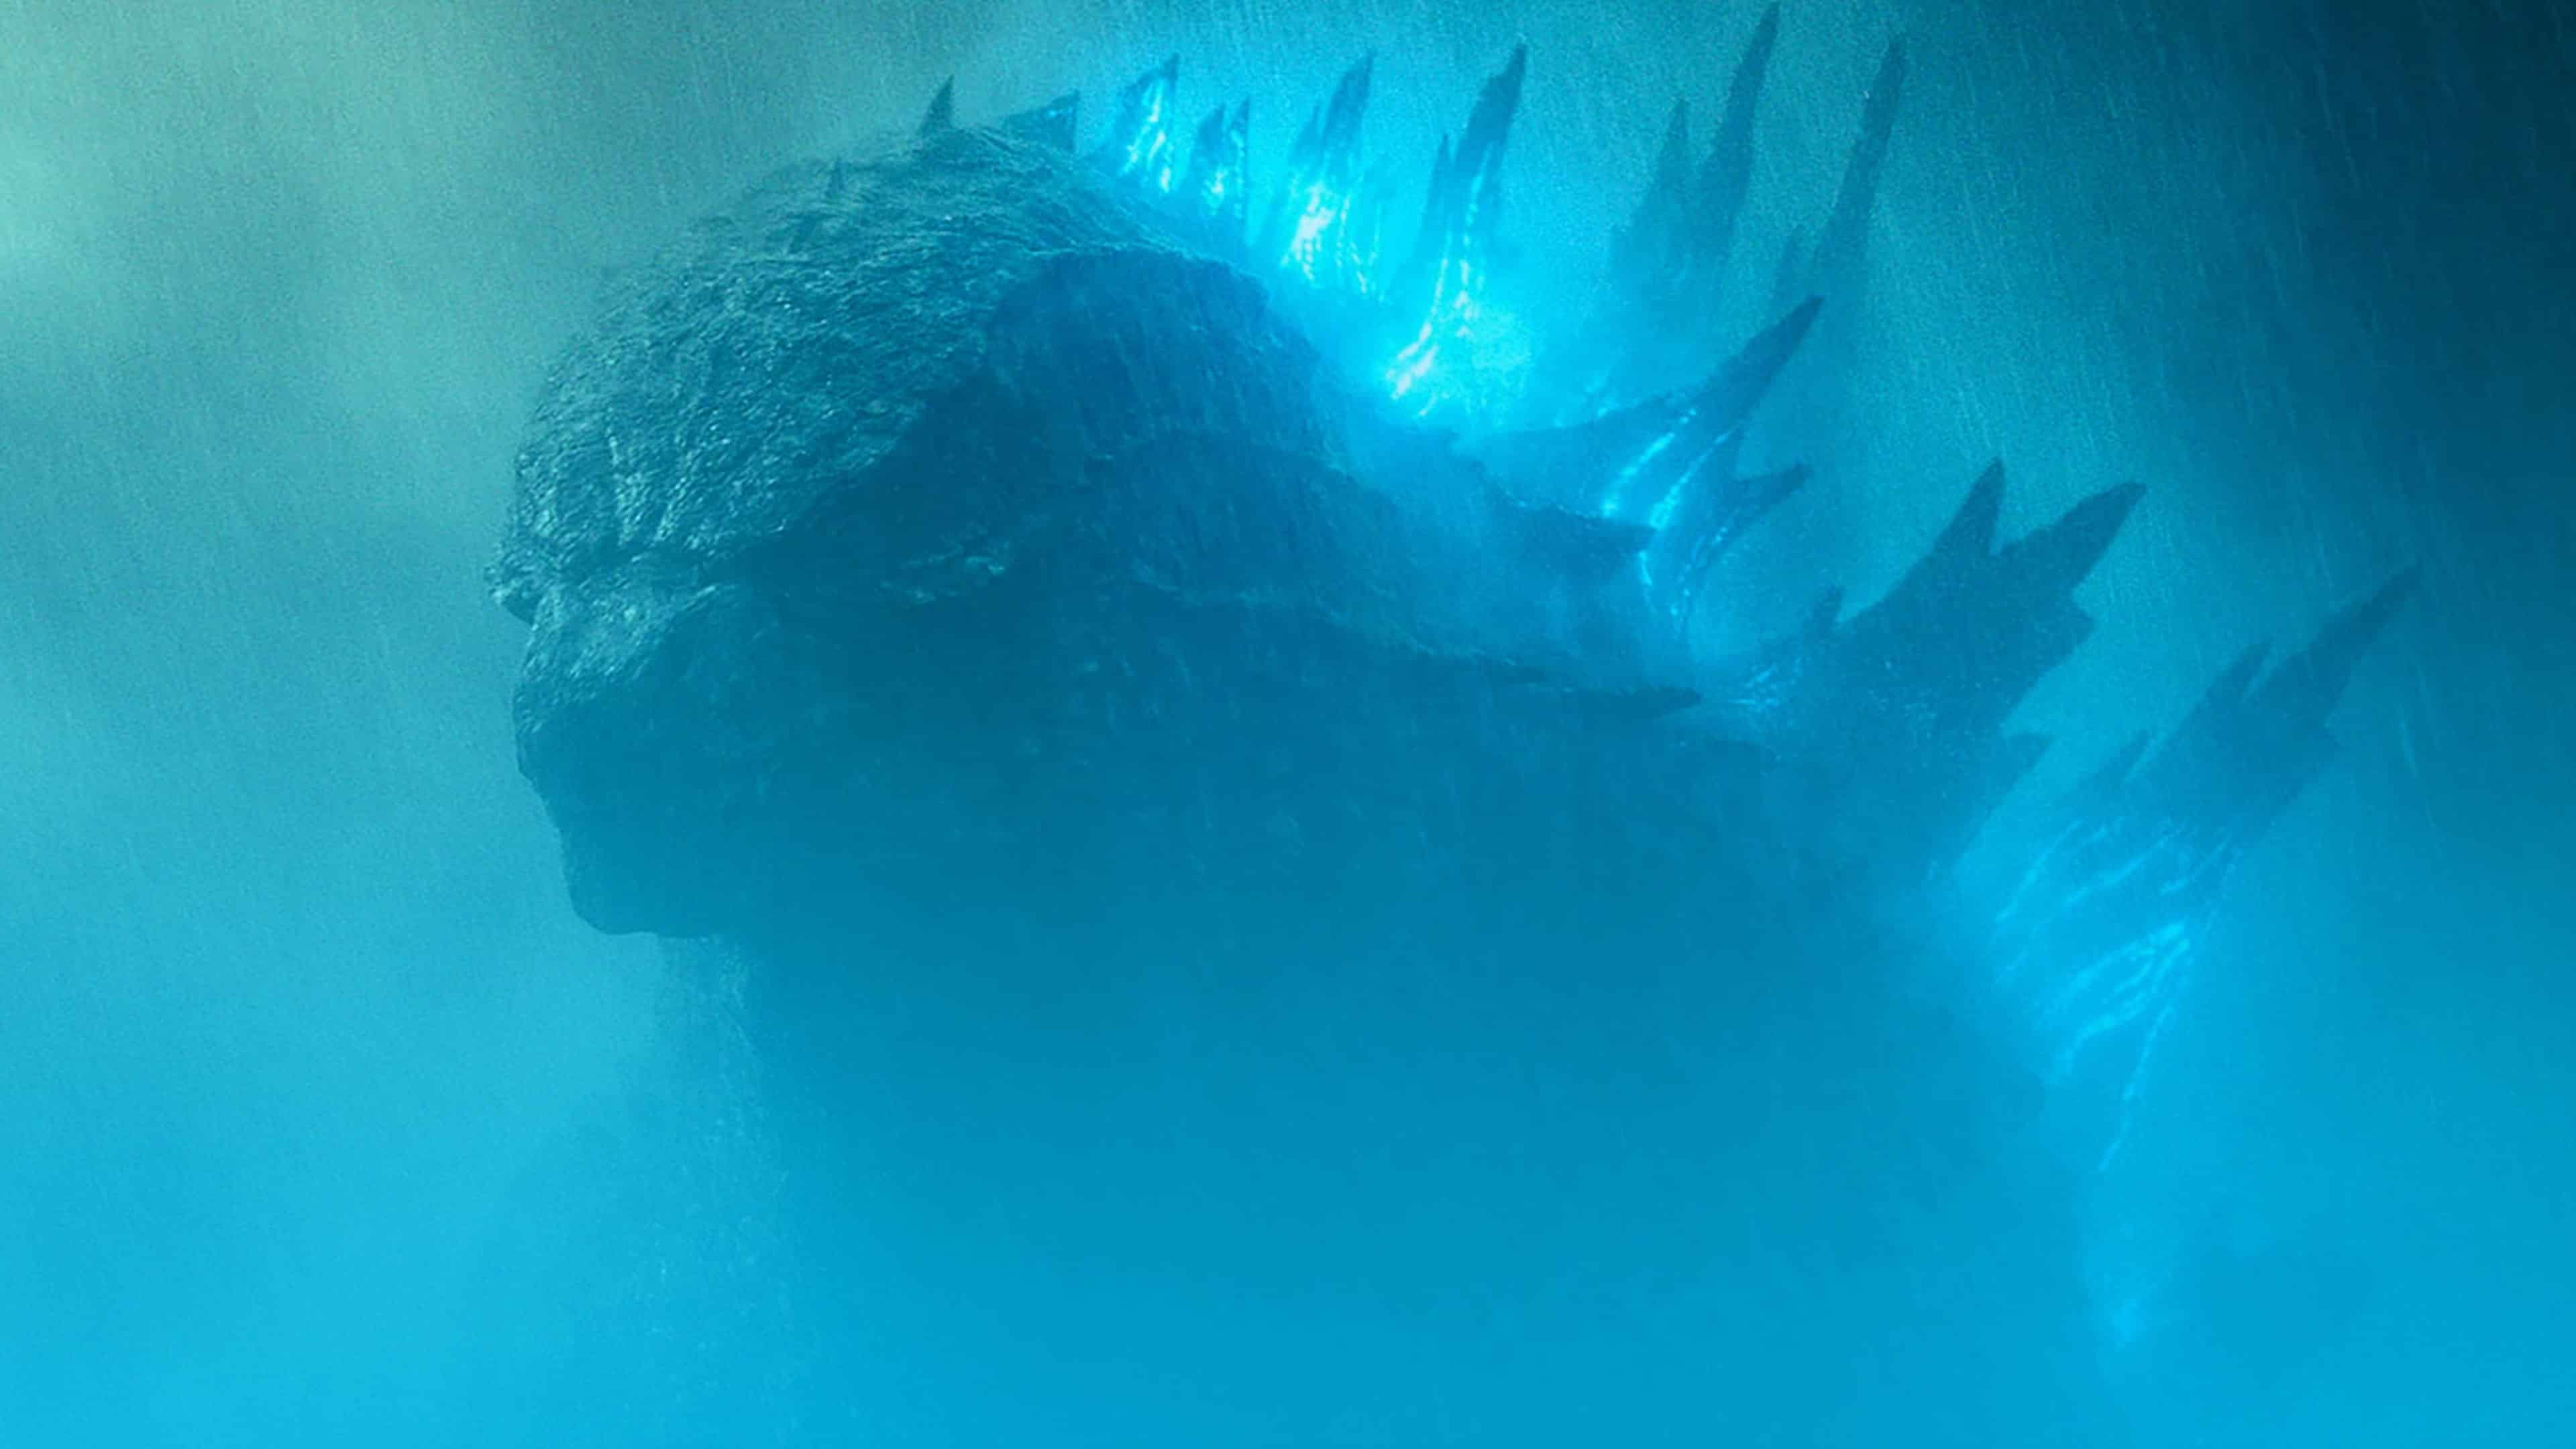 Episode 92 - Godzilla - Featured Image